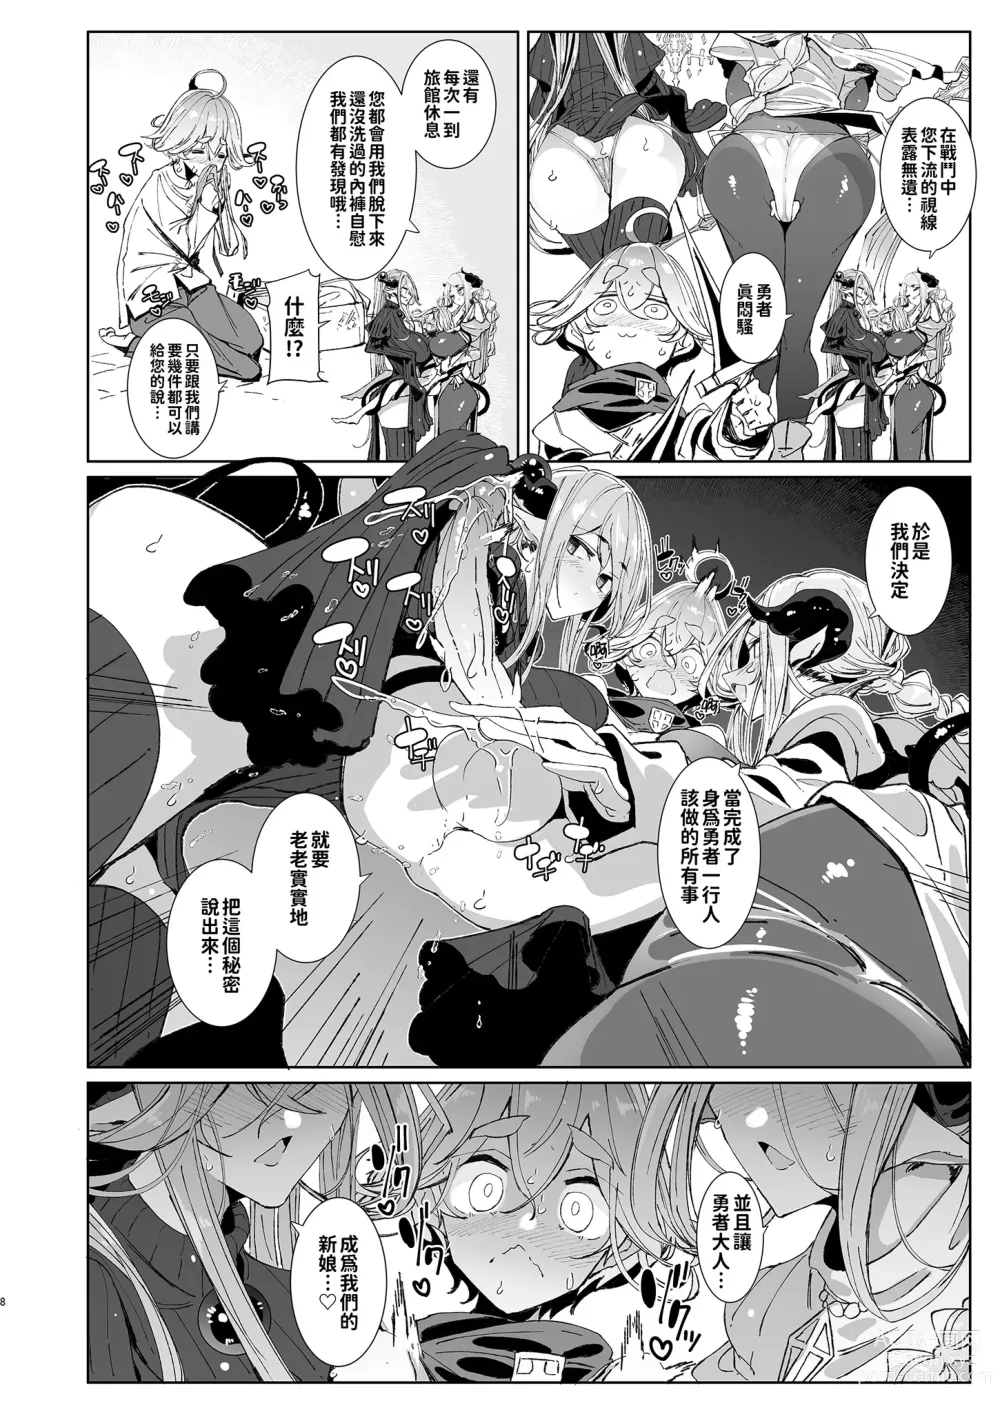 Page 8 of doujinshi 勇者和兩位扶她淫魔在討伐魔王後肯定要做那件事吧! (decensored)